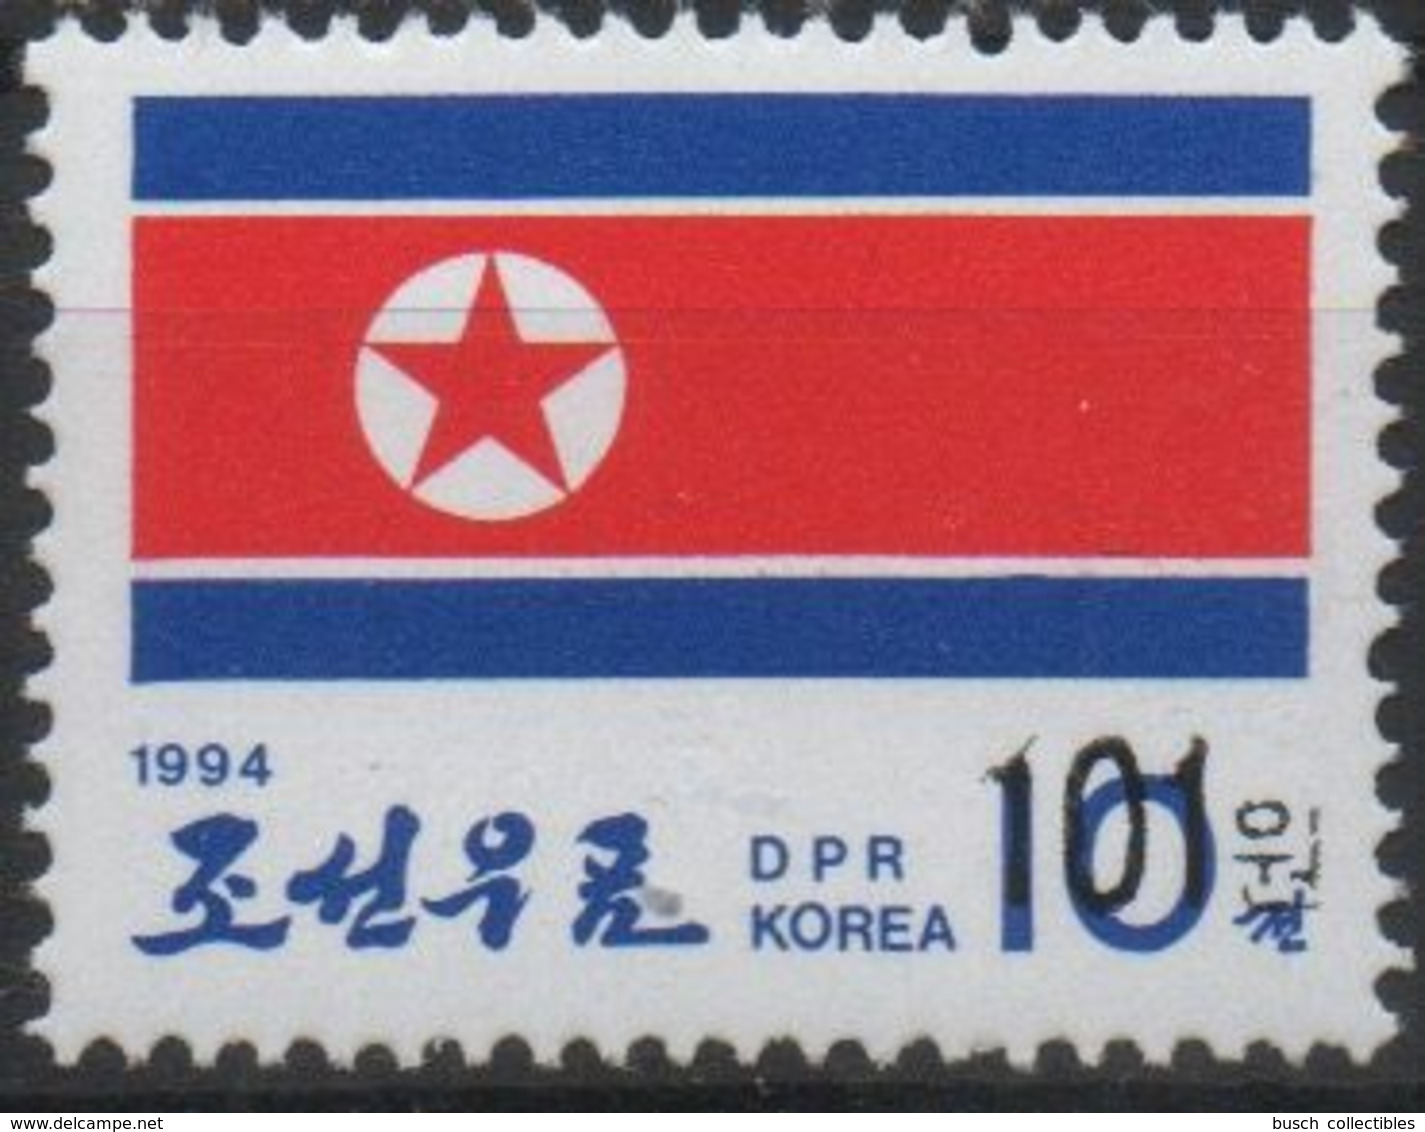 North Korea Corée Du Nord 2006 Mi. 5085 Surchargé OVERPRINT Drapeau National Fahne Flag Flagge Nationalfahne MNH** - Timbres